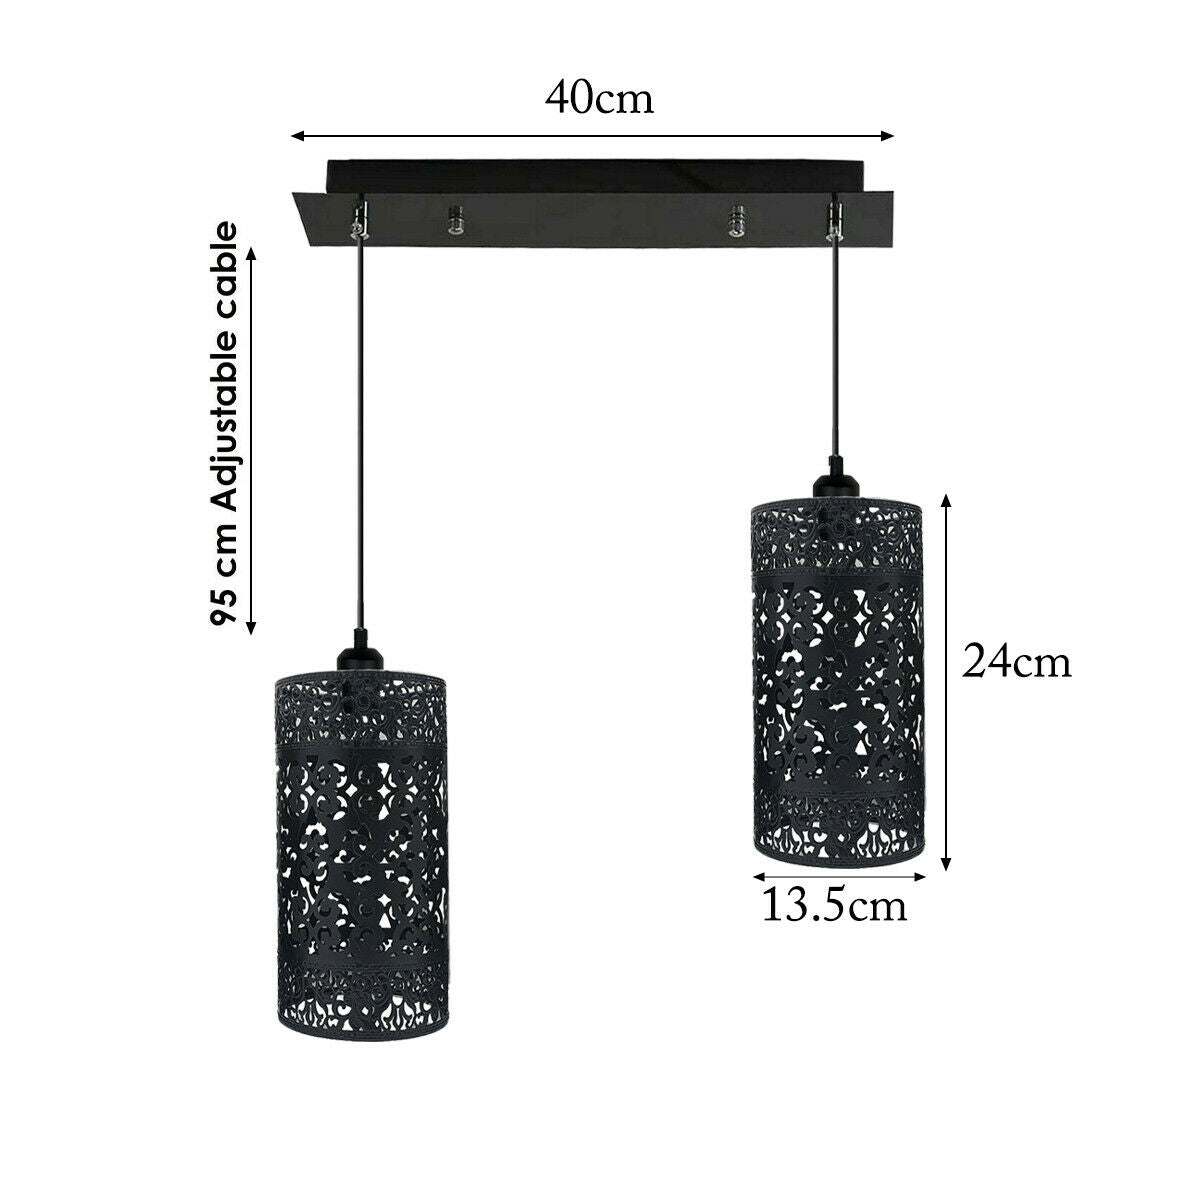 Double Head Black Pendant Lighting Cage 40cm Ceiling Light~1591 - LEDSone UK Ltd